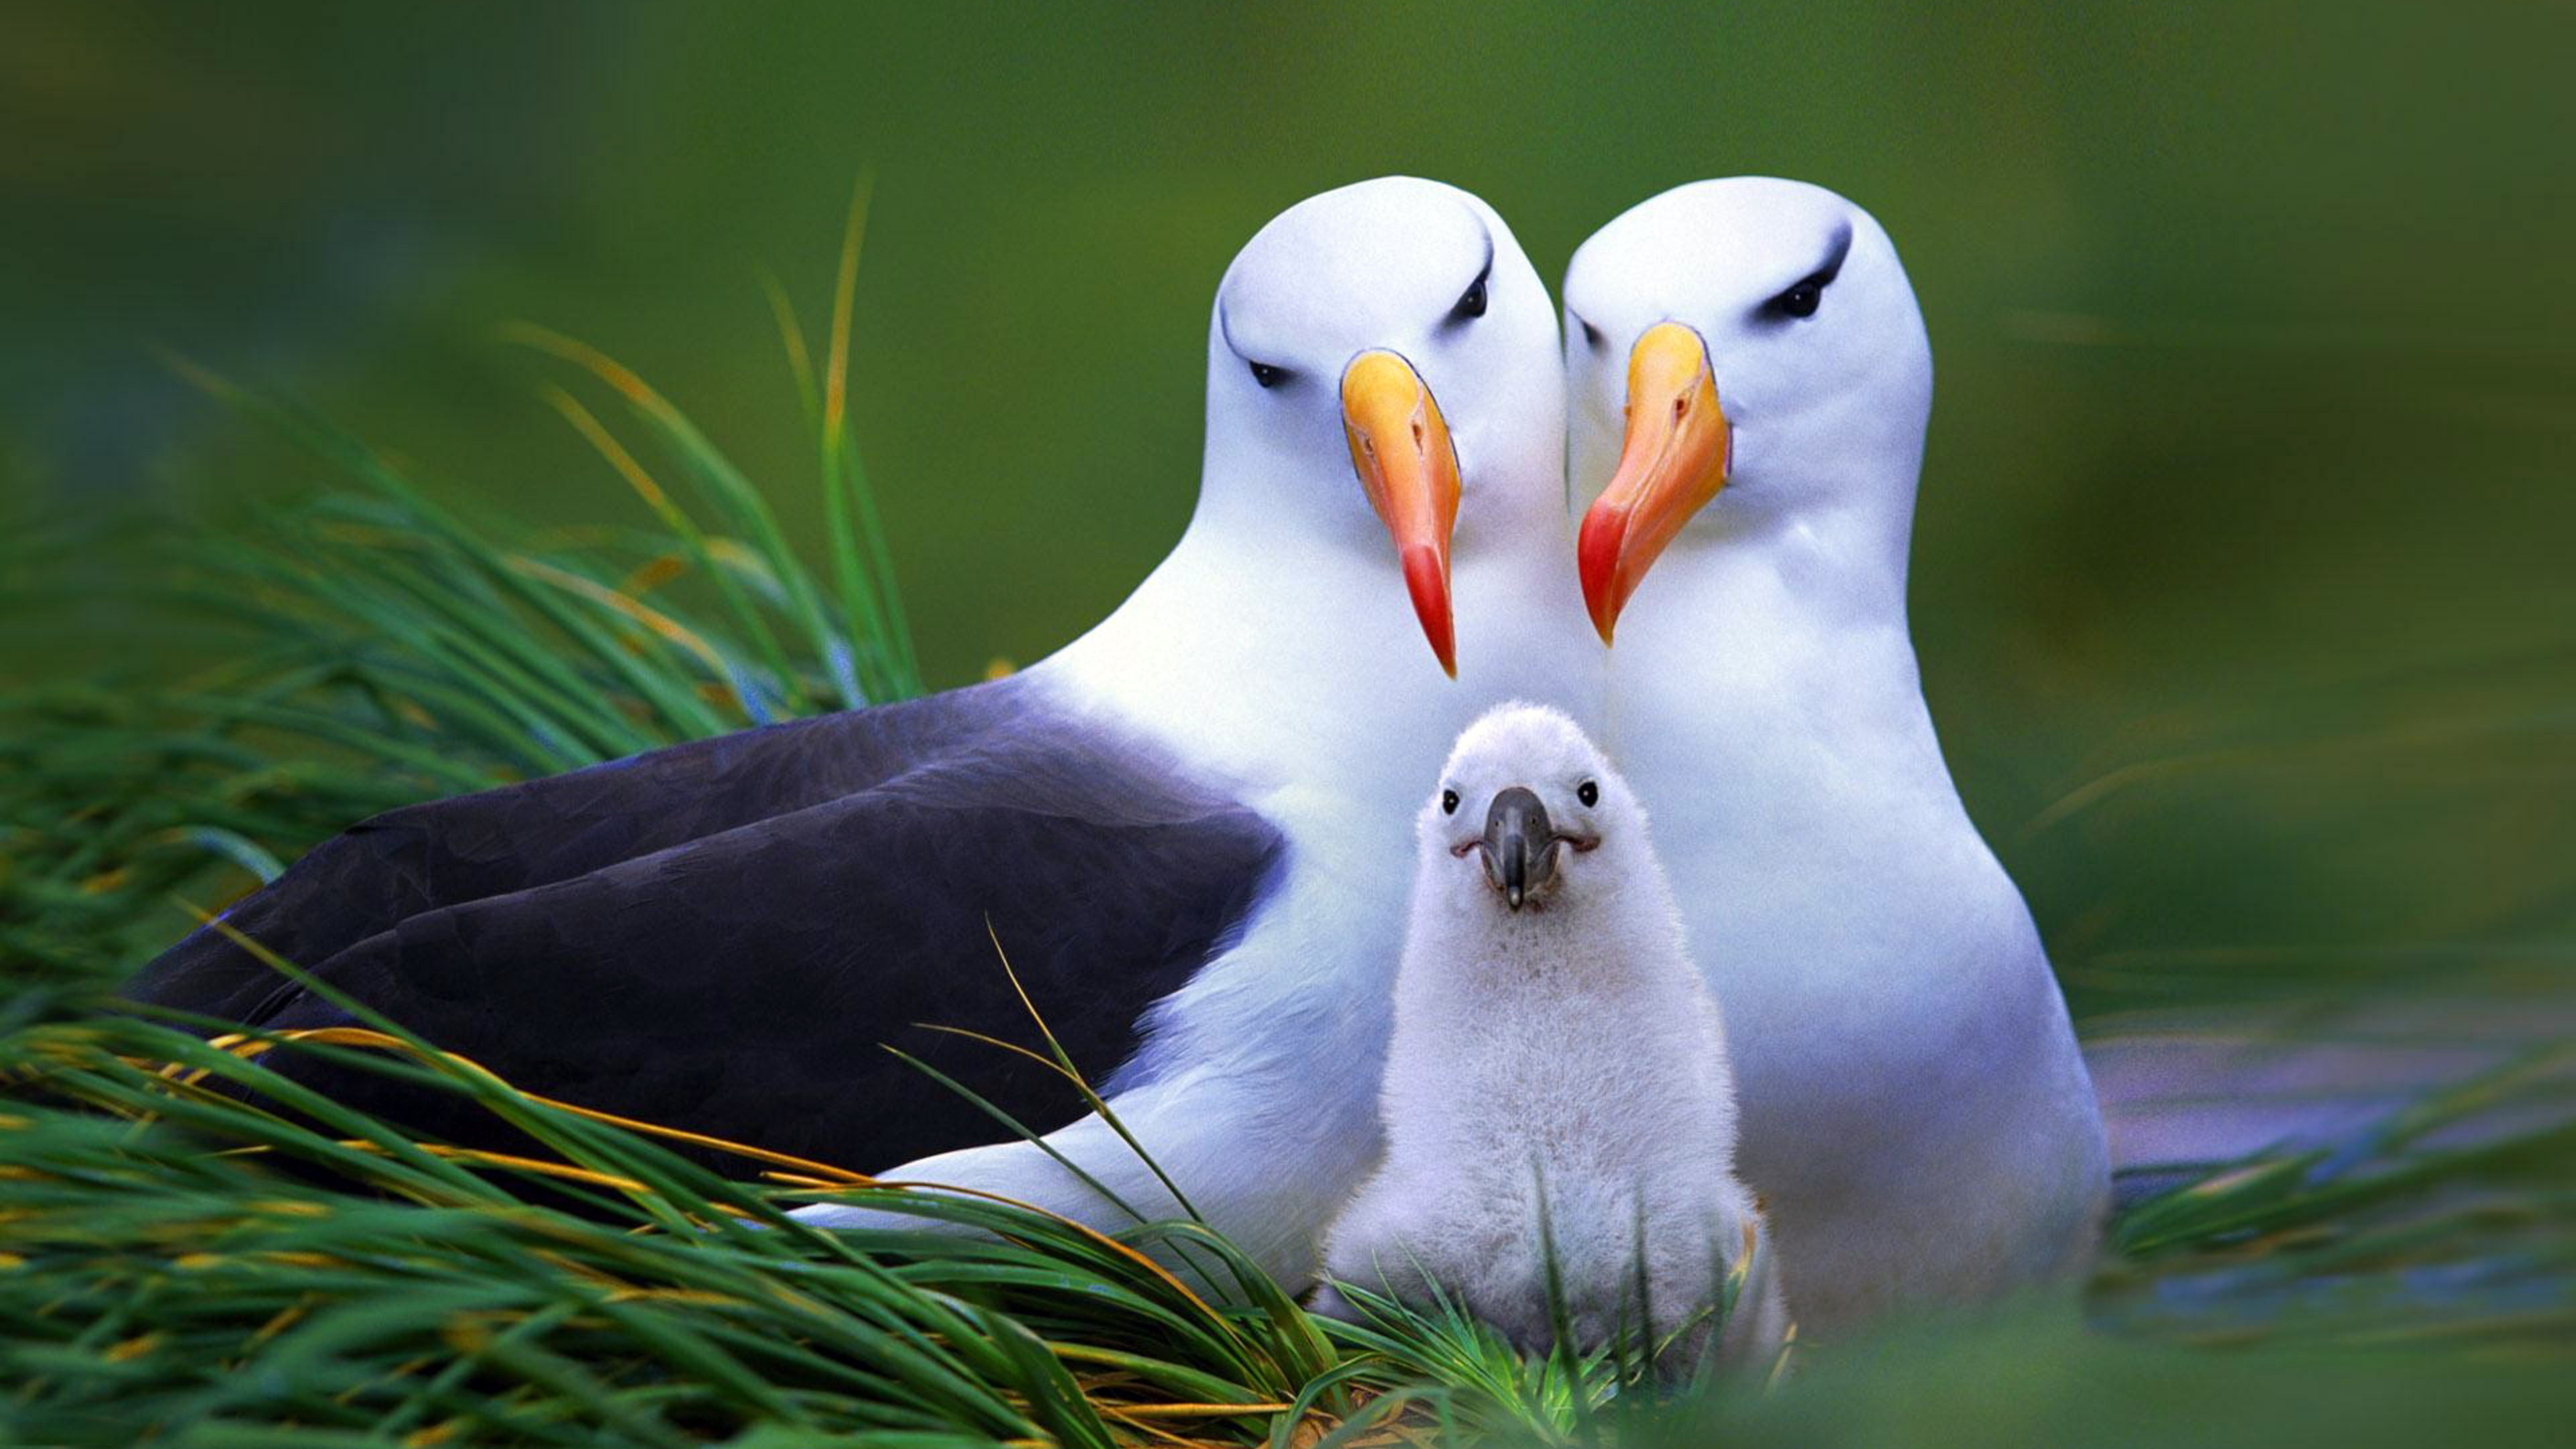 Albatross in high resolution, Wuxga display, Bird of the wild, Ocean wanderer, 3840x2160 4K Desktop